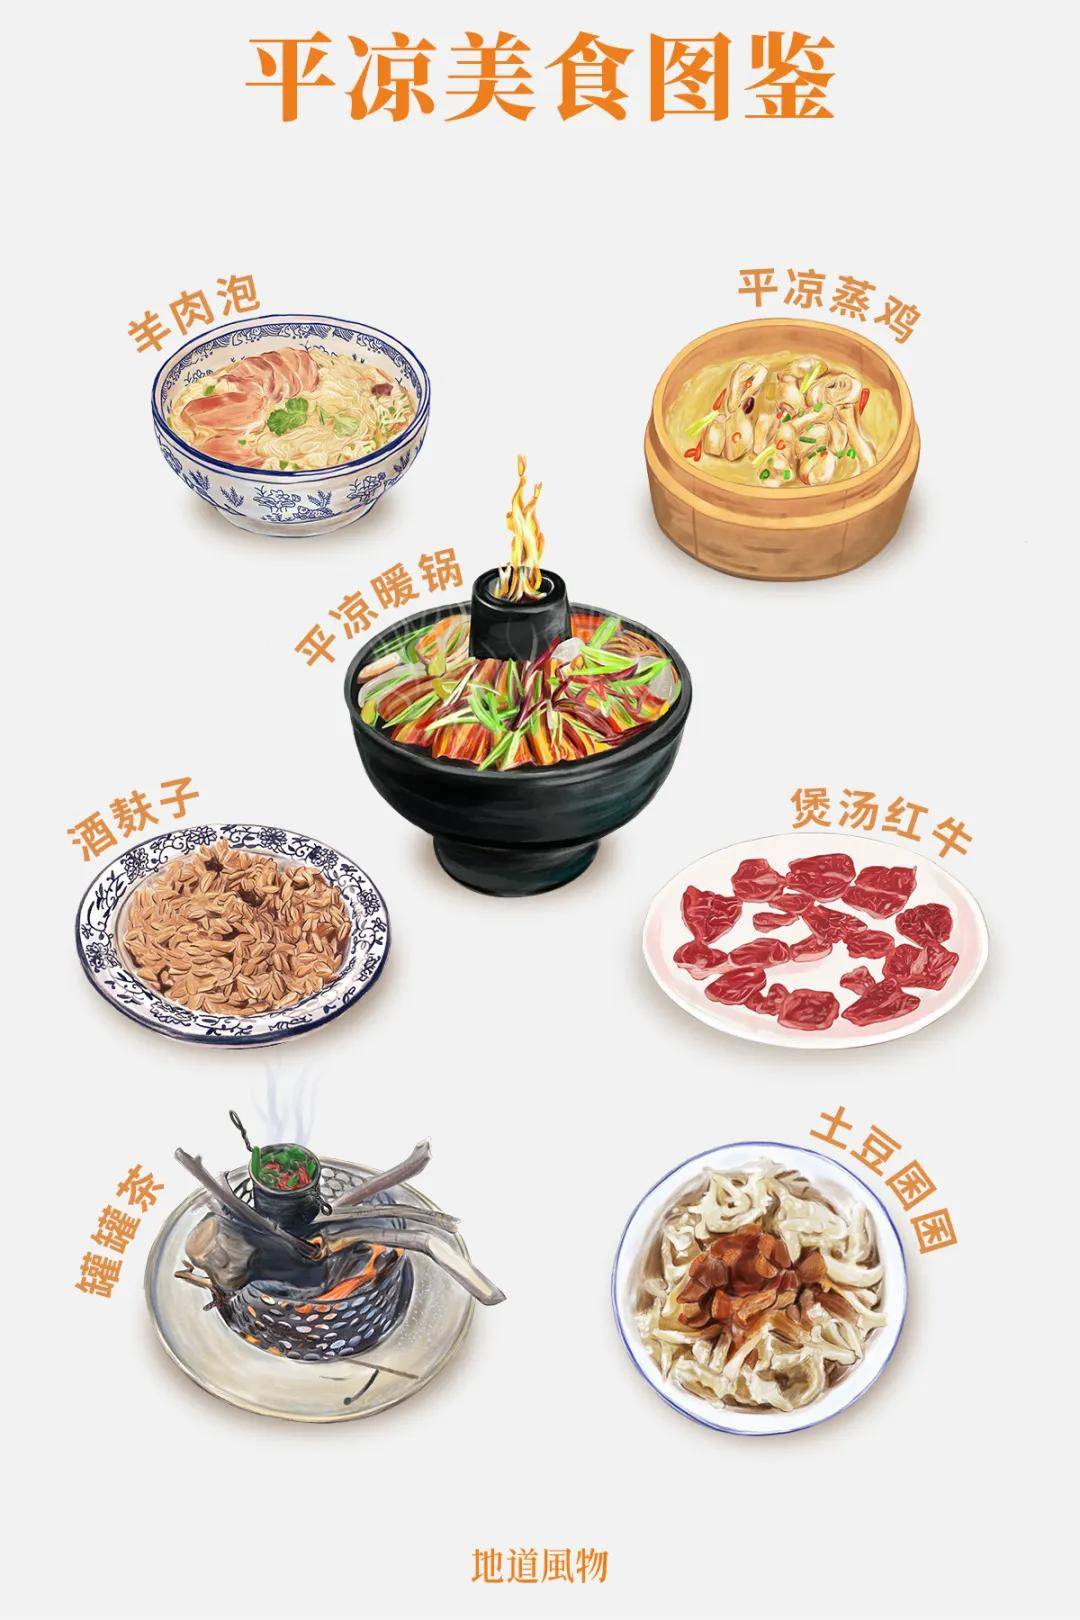 官方：管家婆一肖一码100%准确-享受炙烈的松弛感 2024龙江美食文化节暨齐齐哈尔烤肉美食节开幕